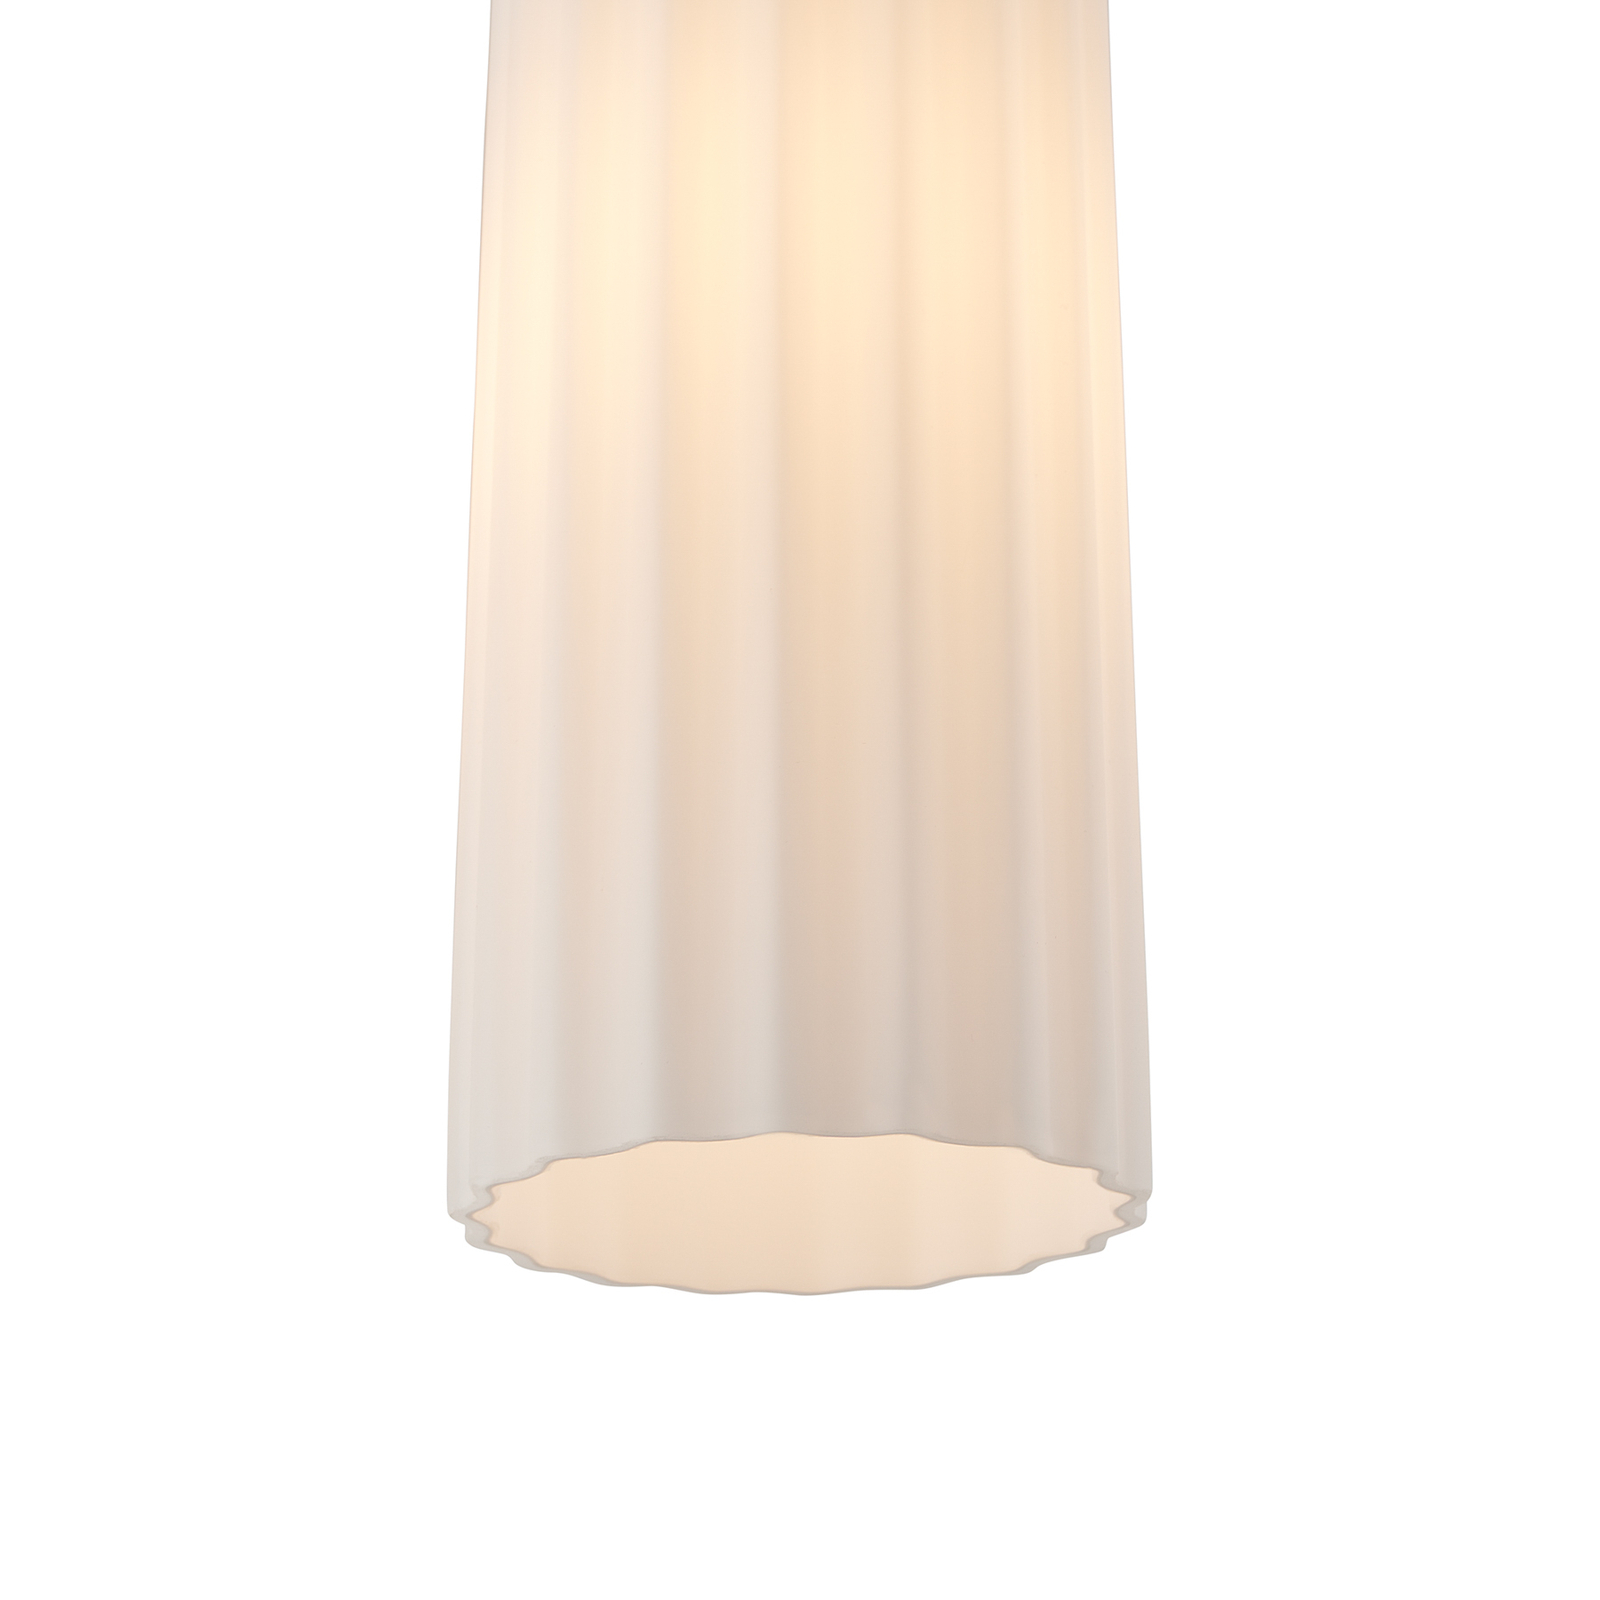 Lampa wisząca Miella, szkło prążkowane, satynowane/białe